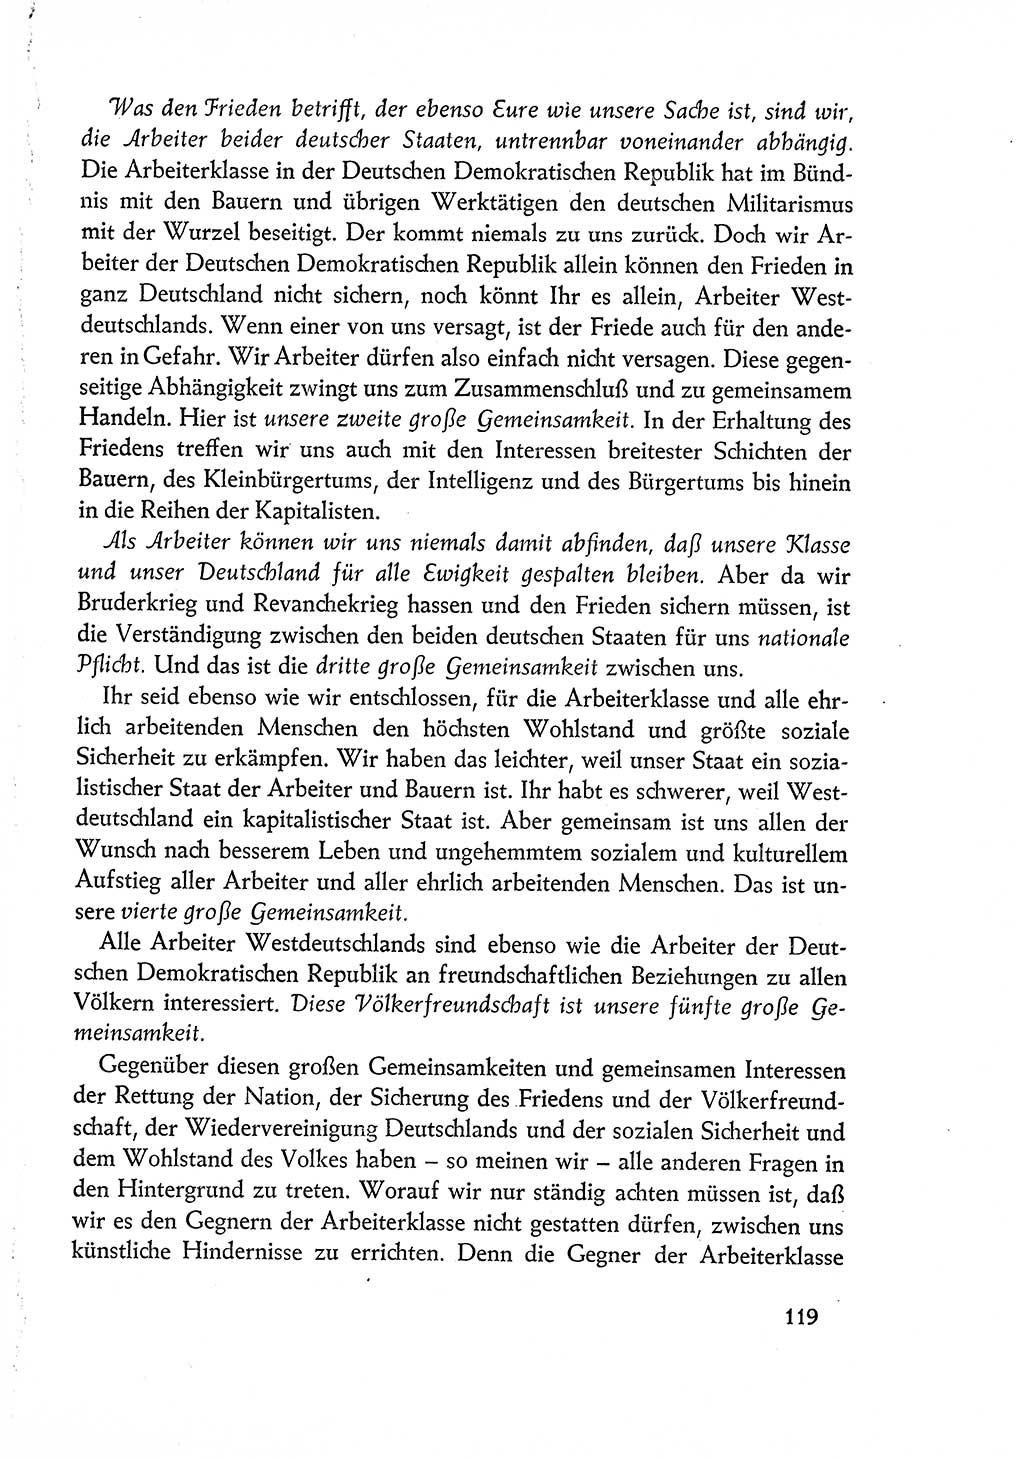 Dokumente der Sozialistischen Einheitspartei Deutschlands (SED) [Deutsche Demokratische Republik (DDR)] 1960-1961, Seite 119 (Dok. SED DDR 1960-1961, S. 119)